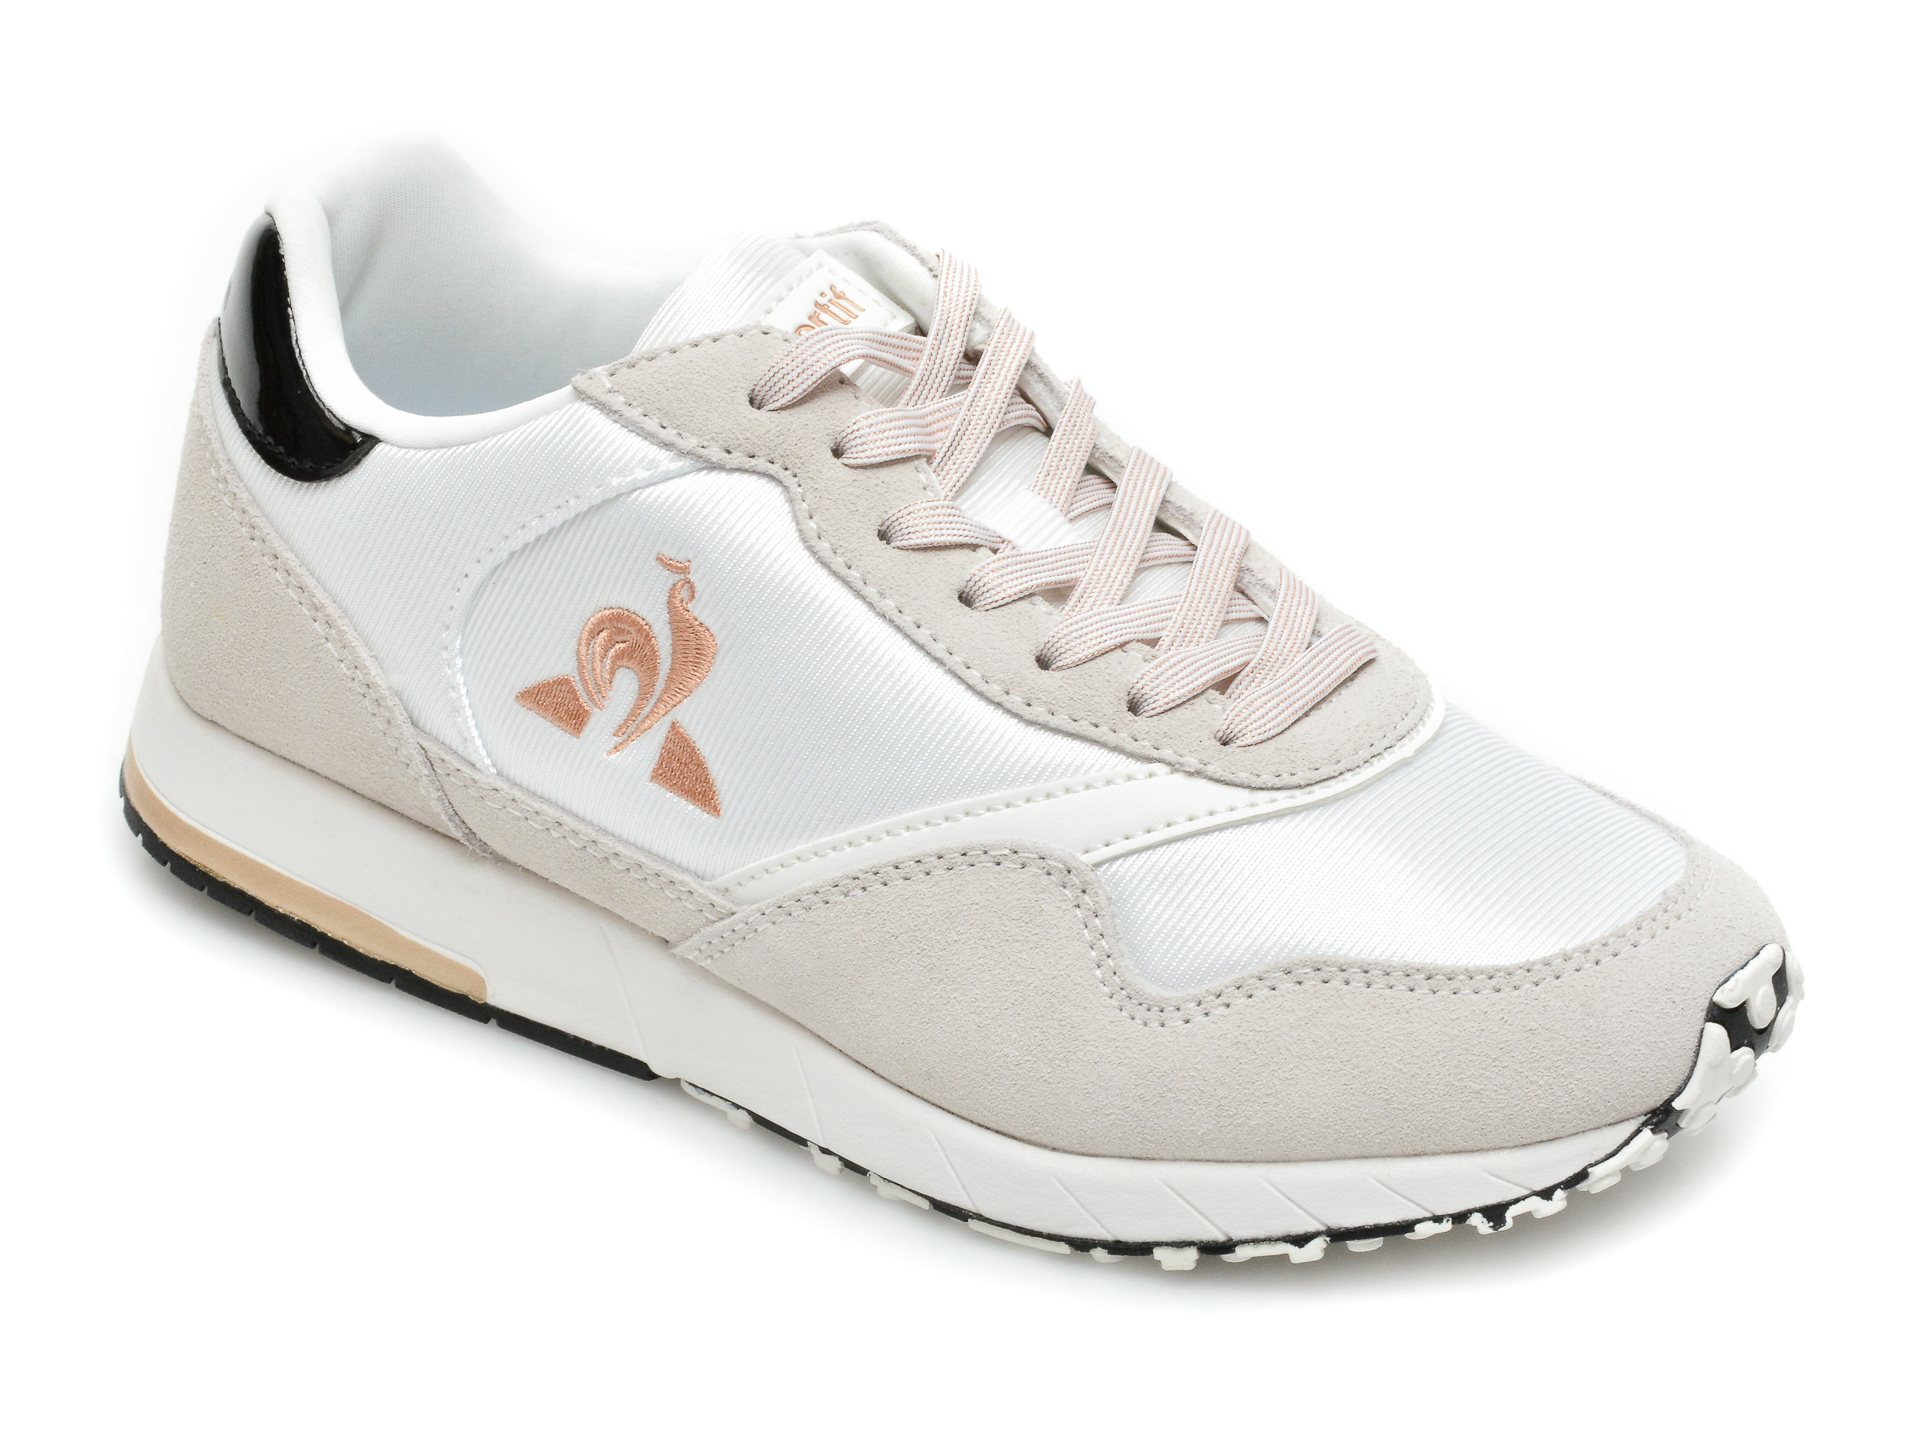 Pantofi sport LE COQ SPORTIF albi, Jazy W Patent, din material textil si piele naturala Le Coq Sportif Le Coq Sportif